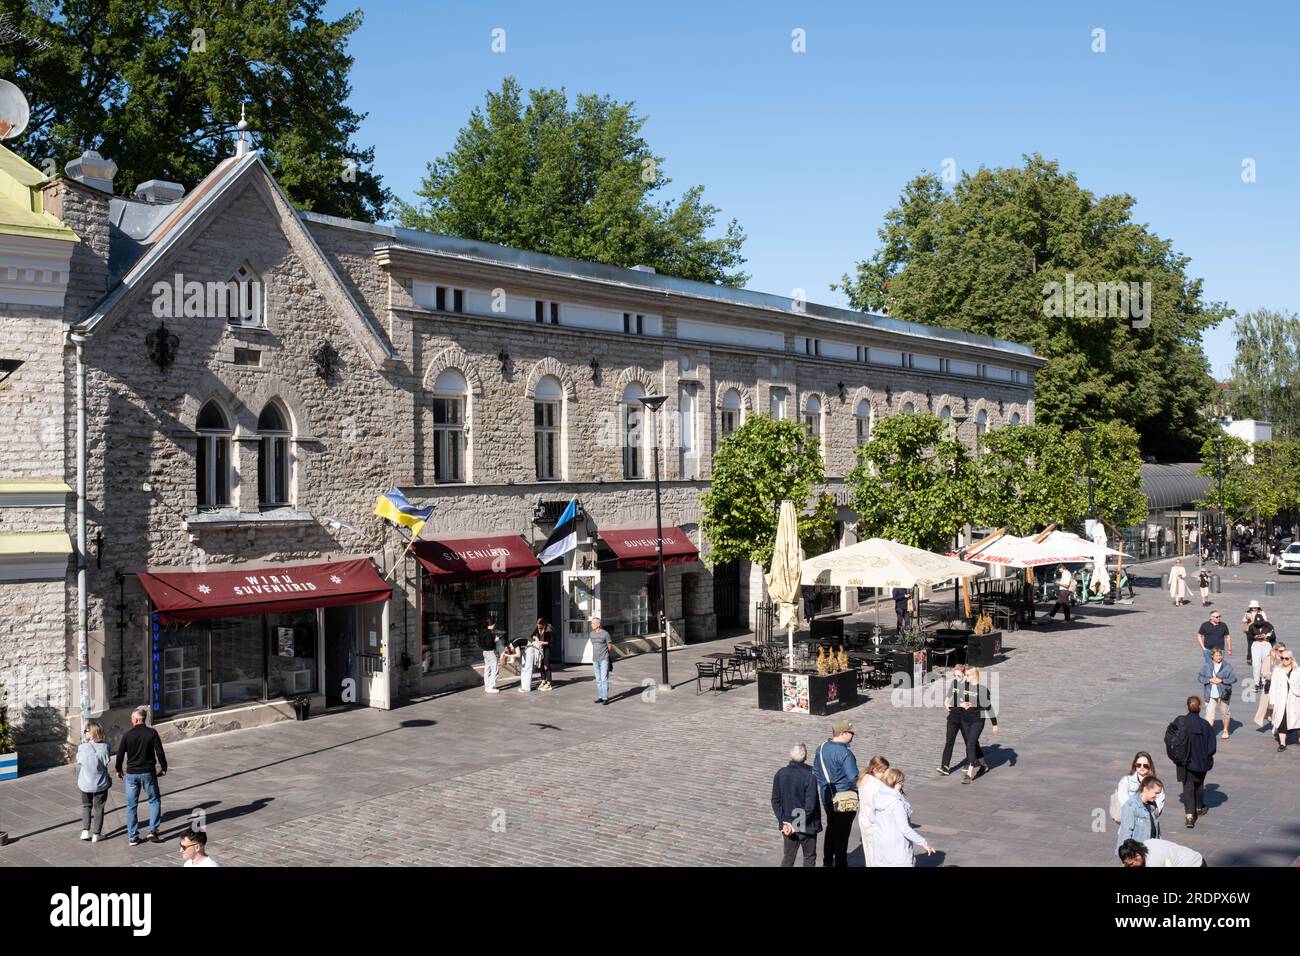 Viru Street (Viru tänav) with shops, restaurants and tourists in Old Hanseatic town of Tallinn, Estonia Stock Photo